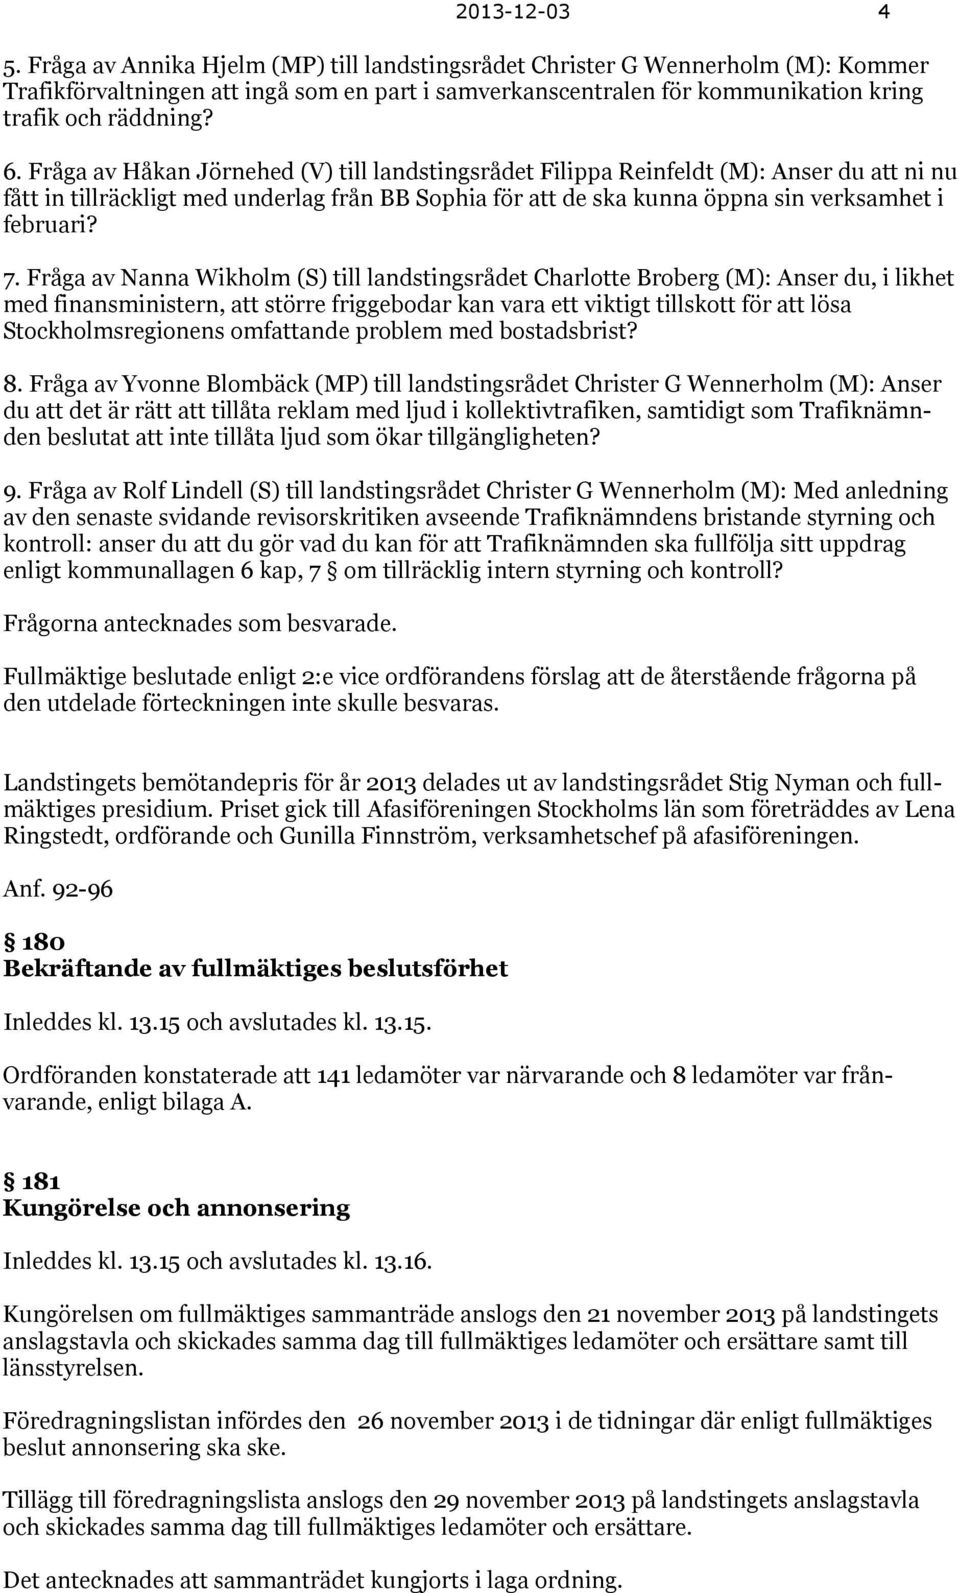 Fråga av Håkan Jörnehed (V) till landstingsrådet Filippa Reinfeldt (M): Anser du att ni nu fått in tillräckligt med underlag från BB Sophia för att de ska kunna öppna sin verksamhet i februari? 7.